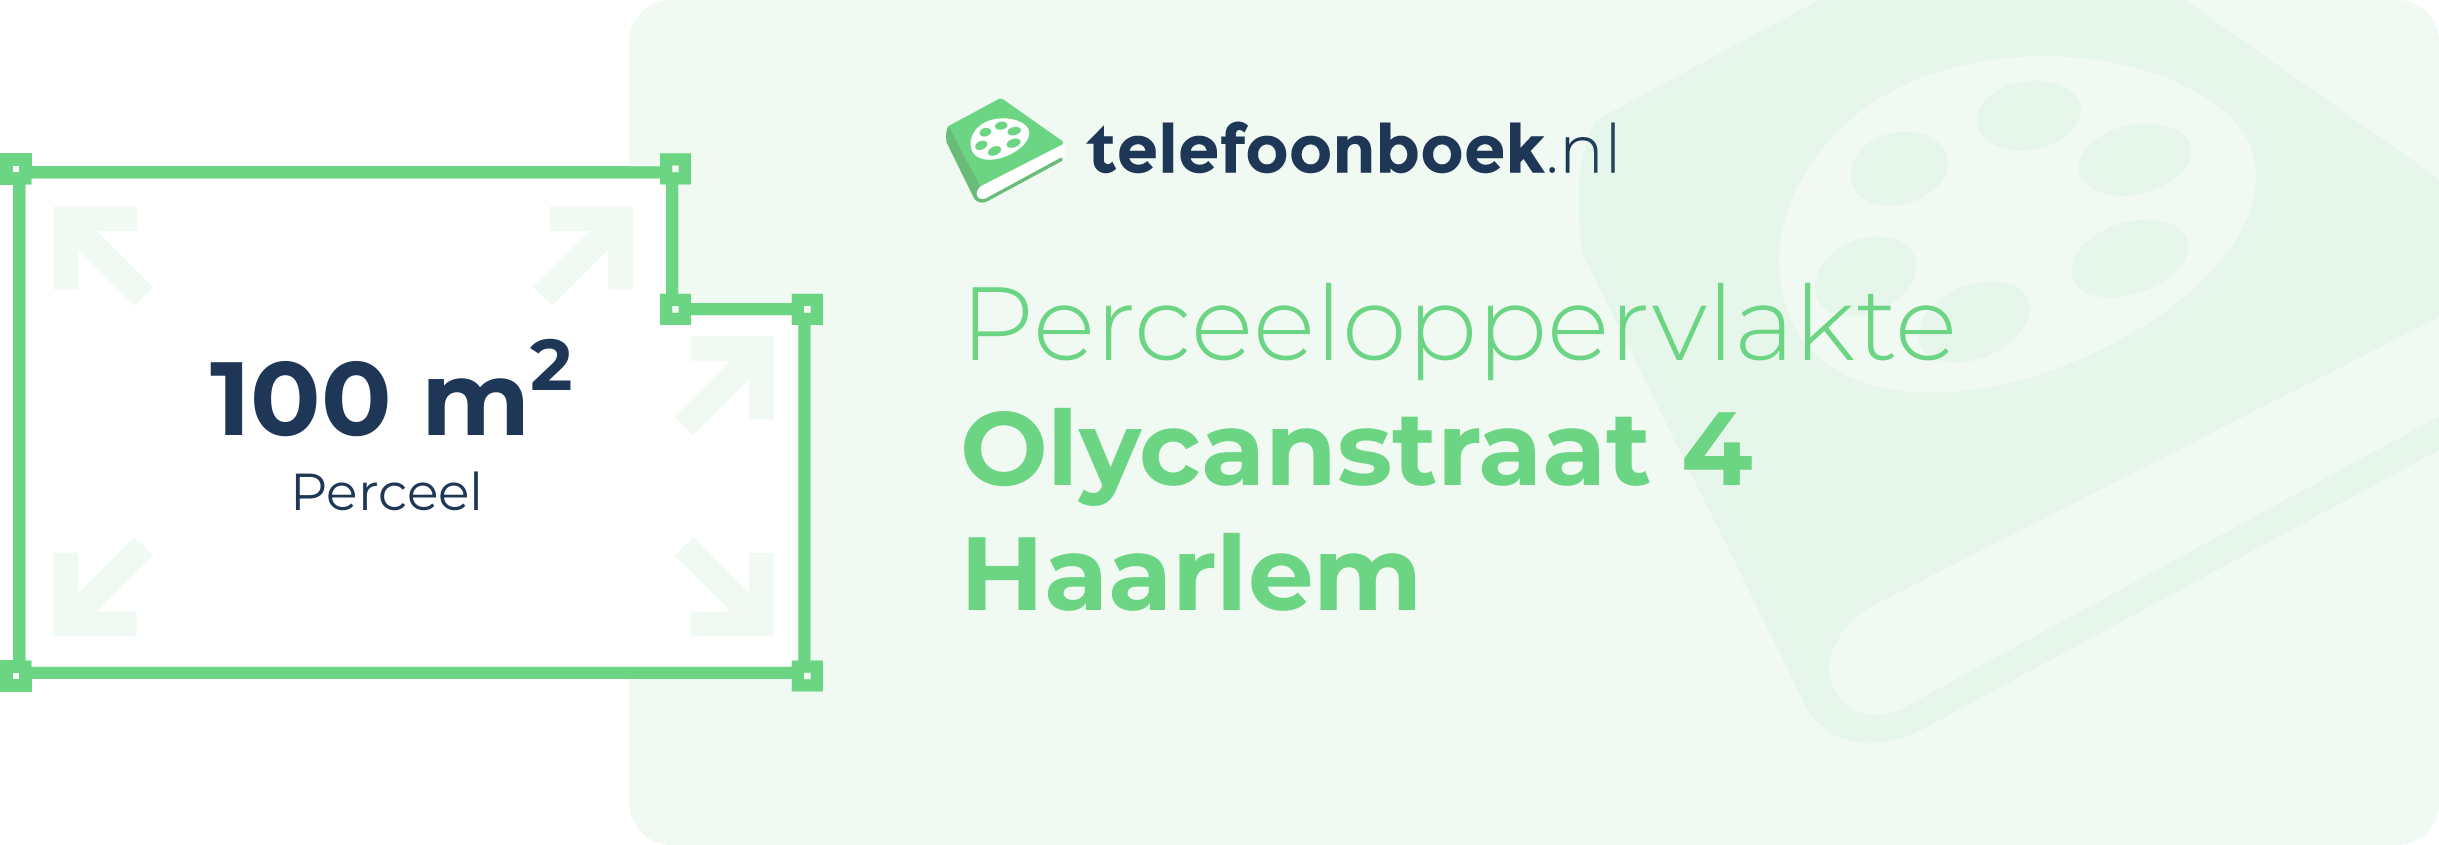 Perceeloppervlakte Olycanstraat 4 Haarlem